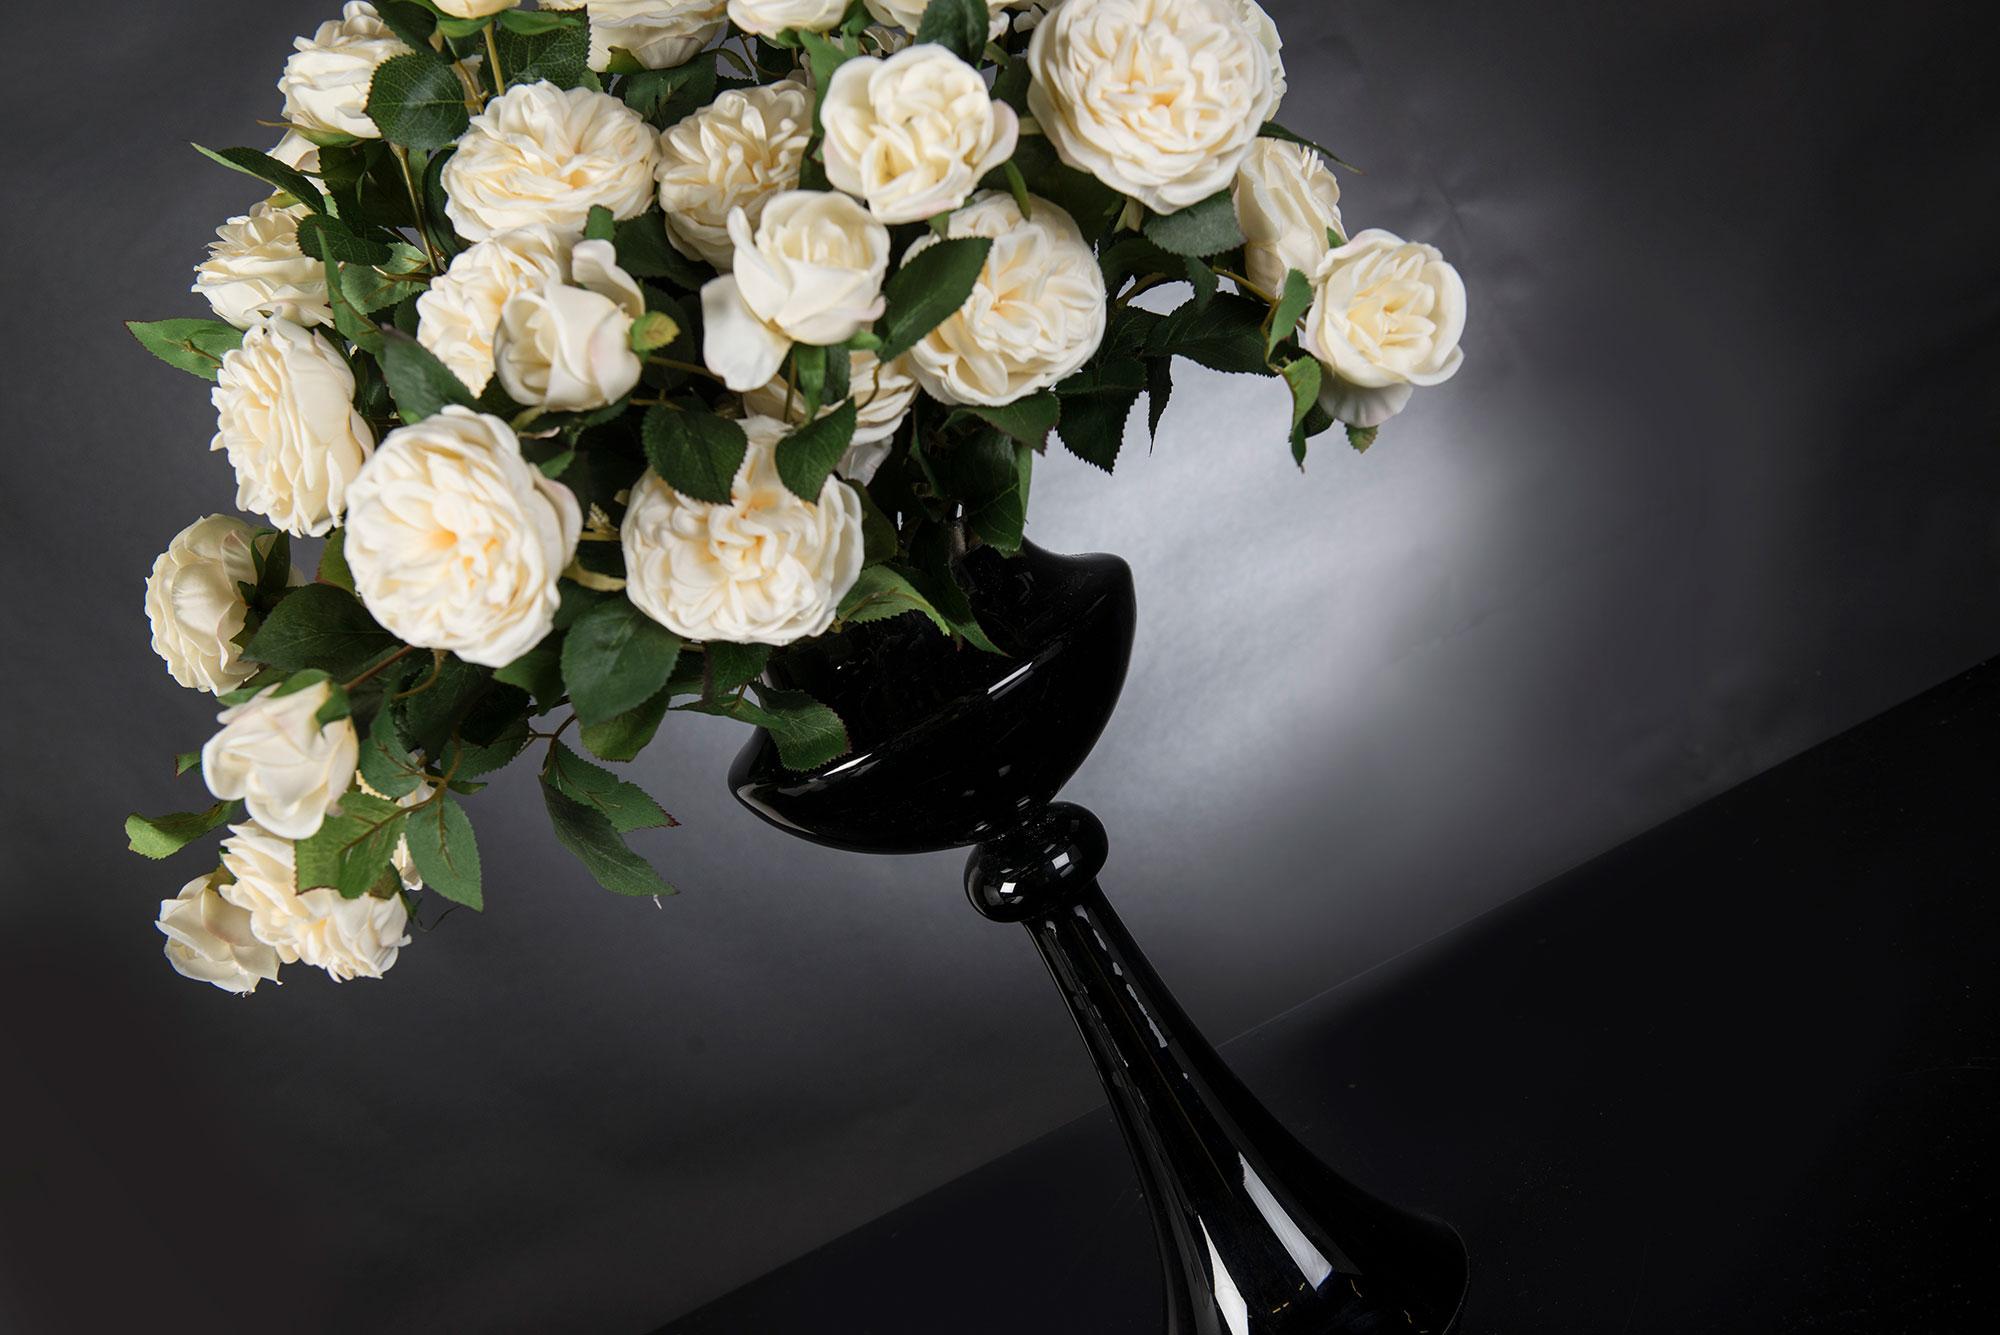 Italian Eracle Bouquet Set Arrangement, Flowers, Italy For Sale